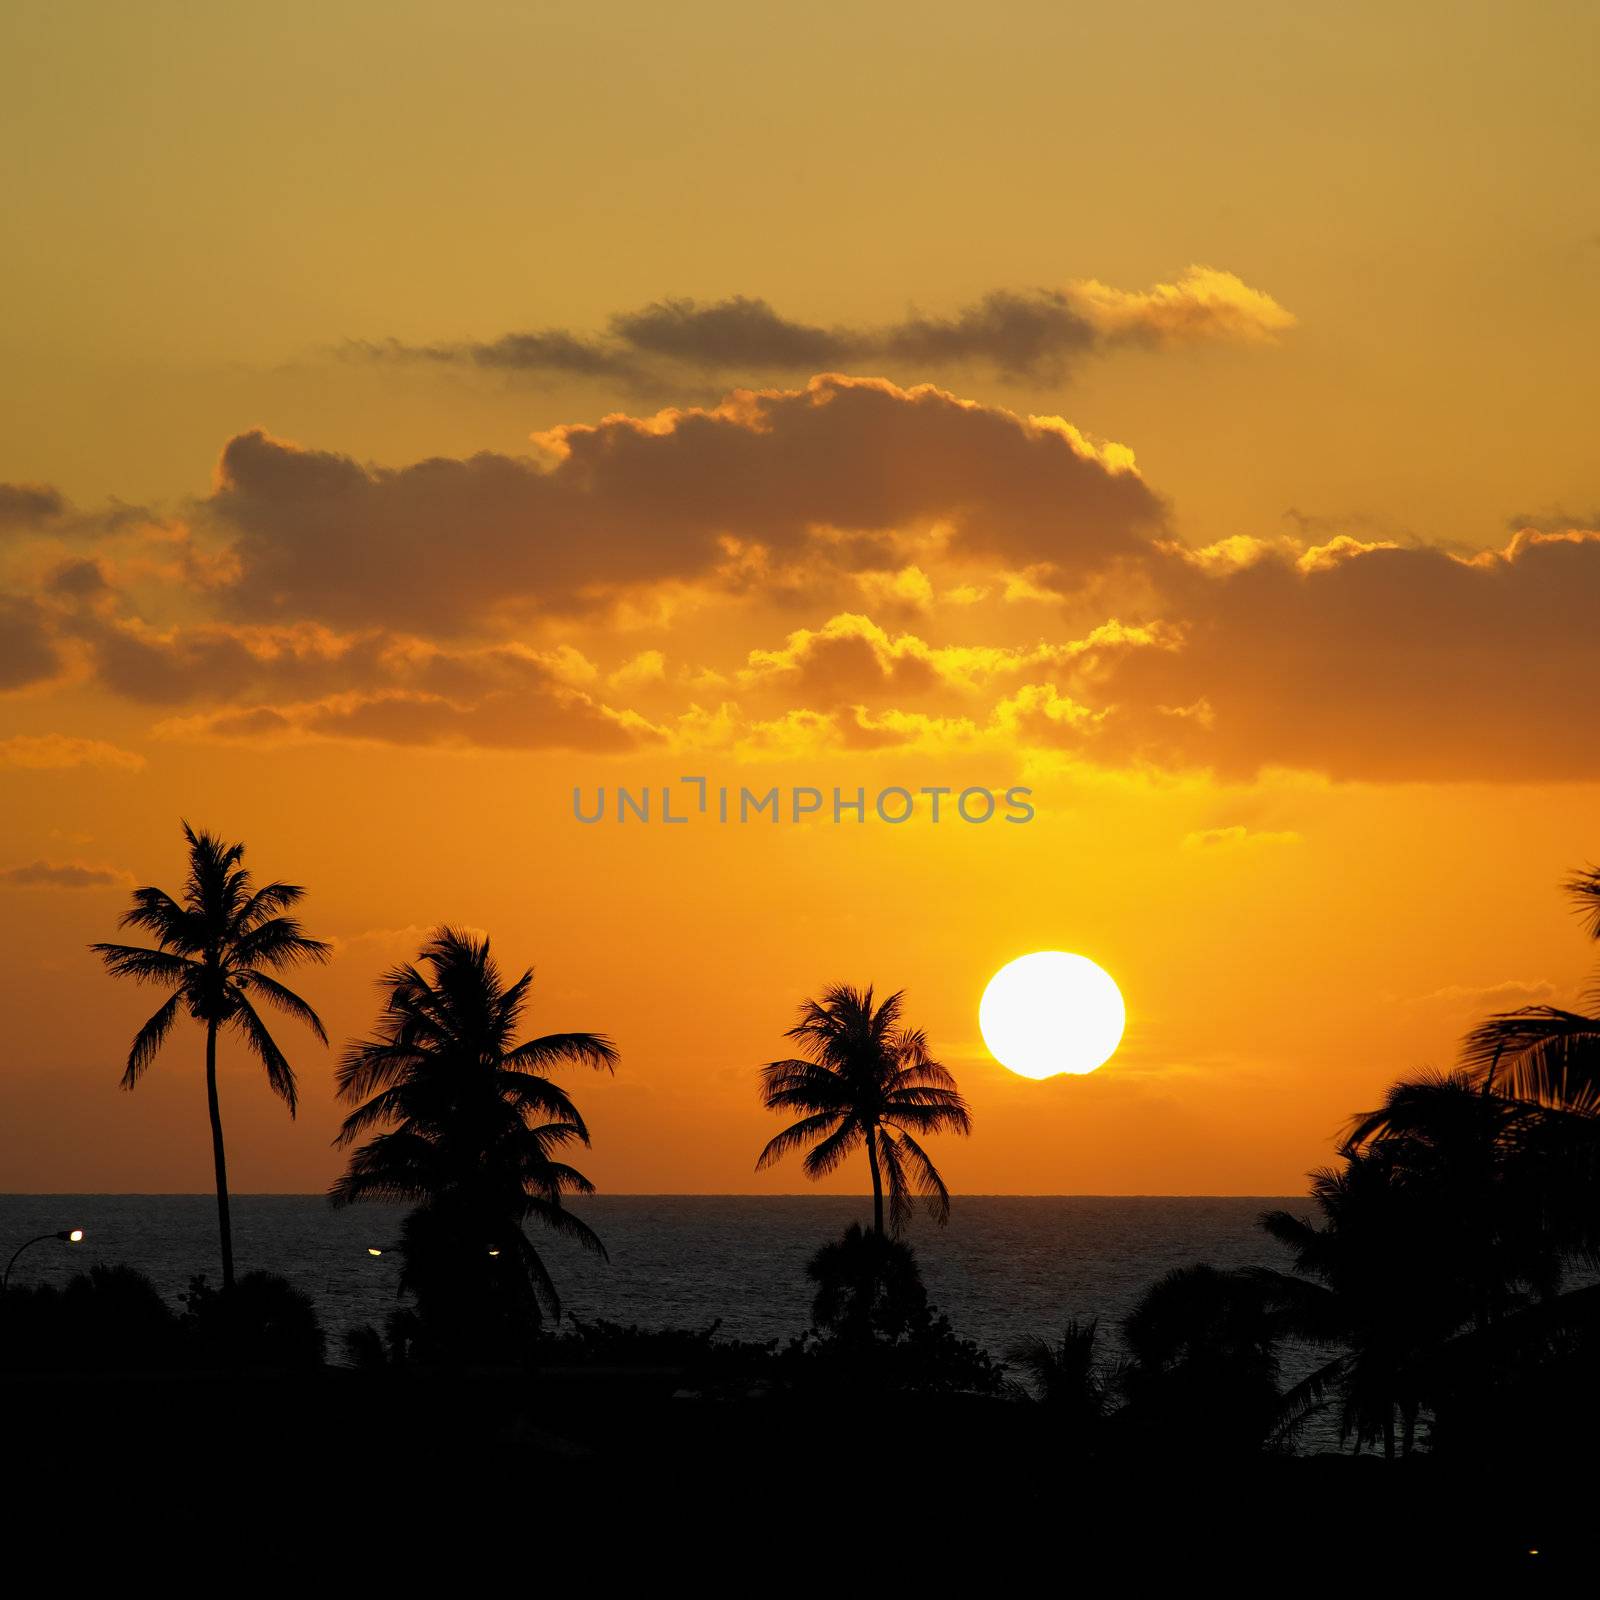 sunset, Varadero, Cuba by phbcz